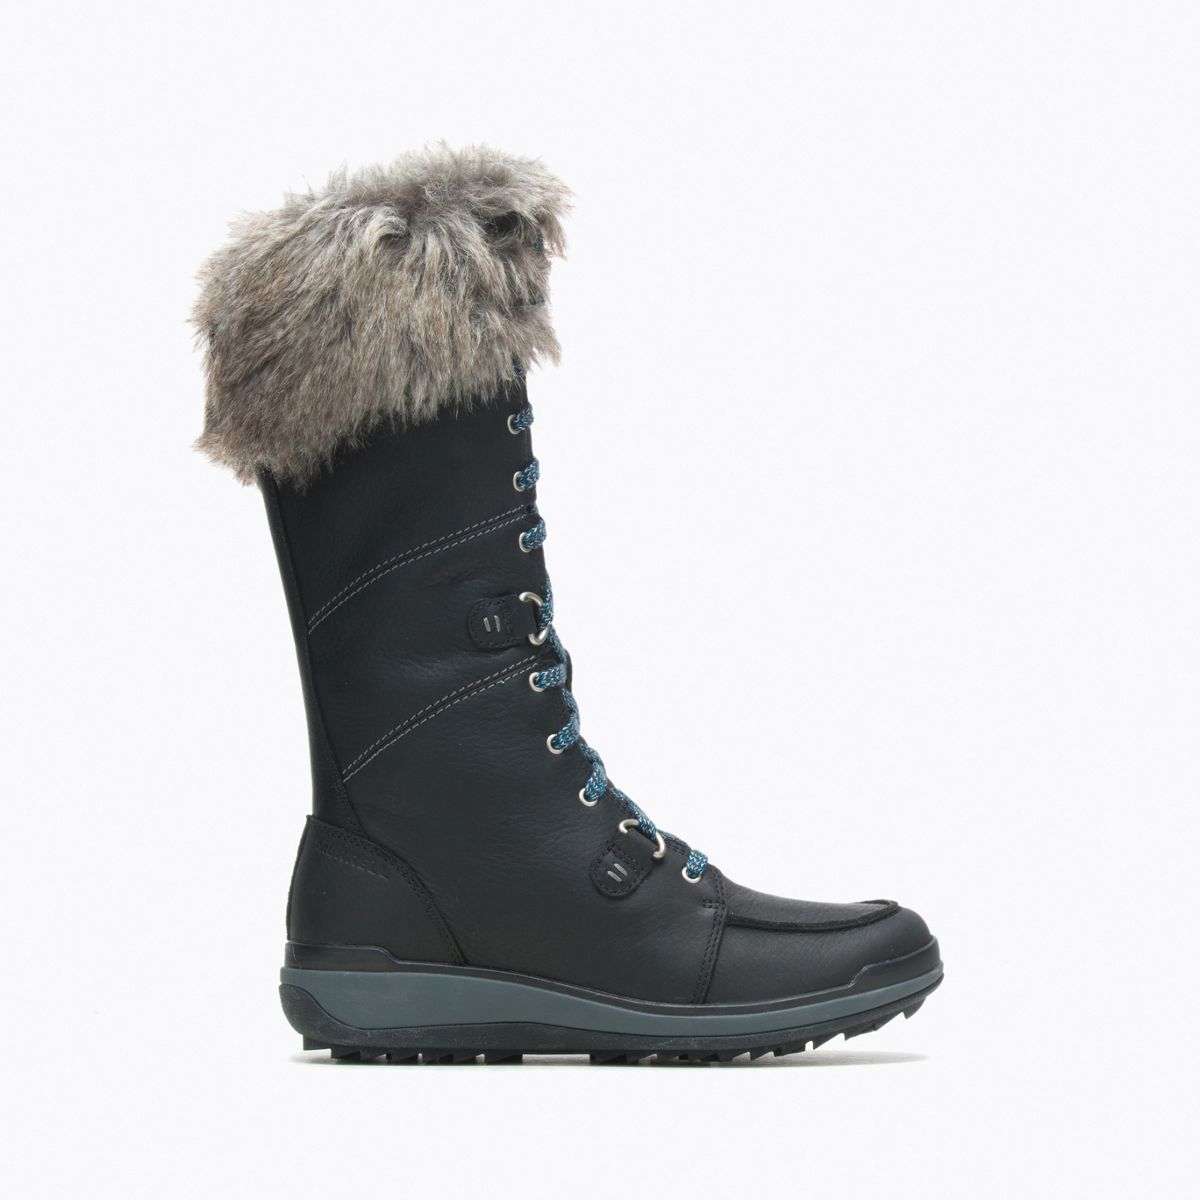 Merrell Ladies Snowcreek Tall Polar Waterproof Winter Boots